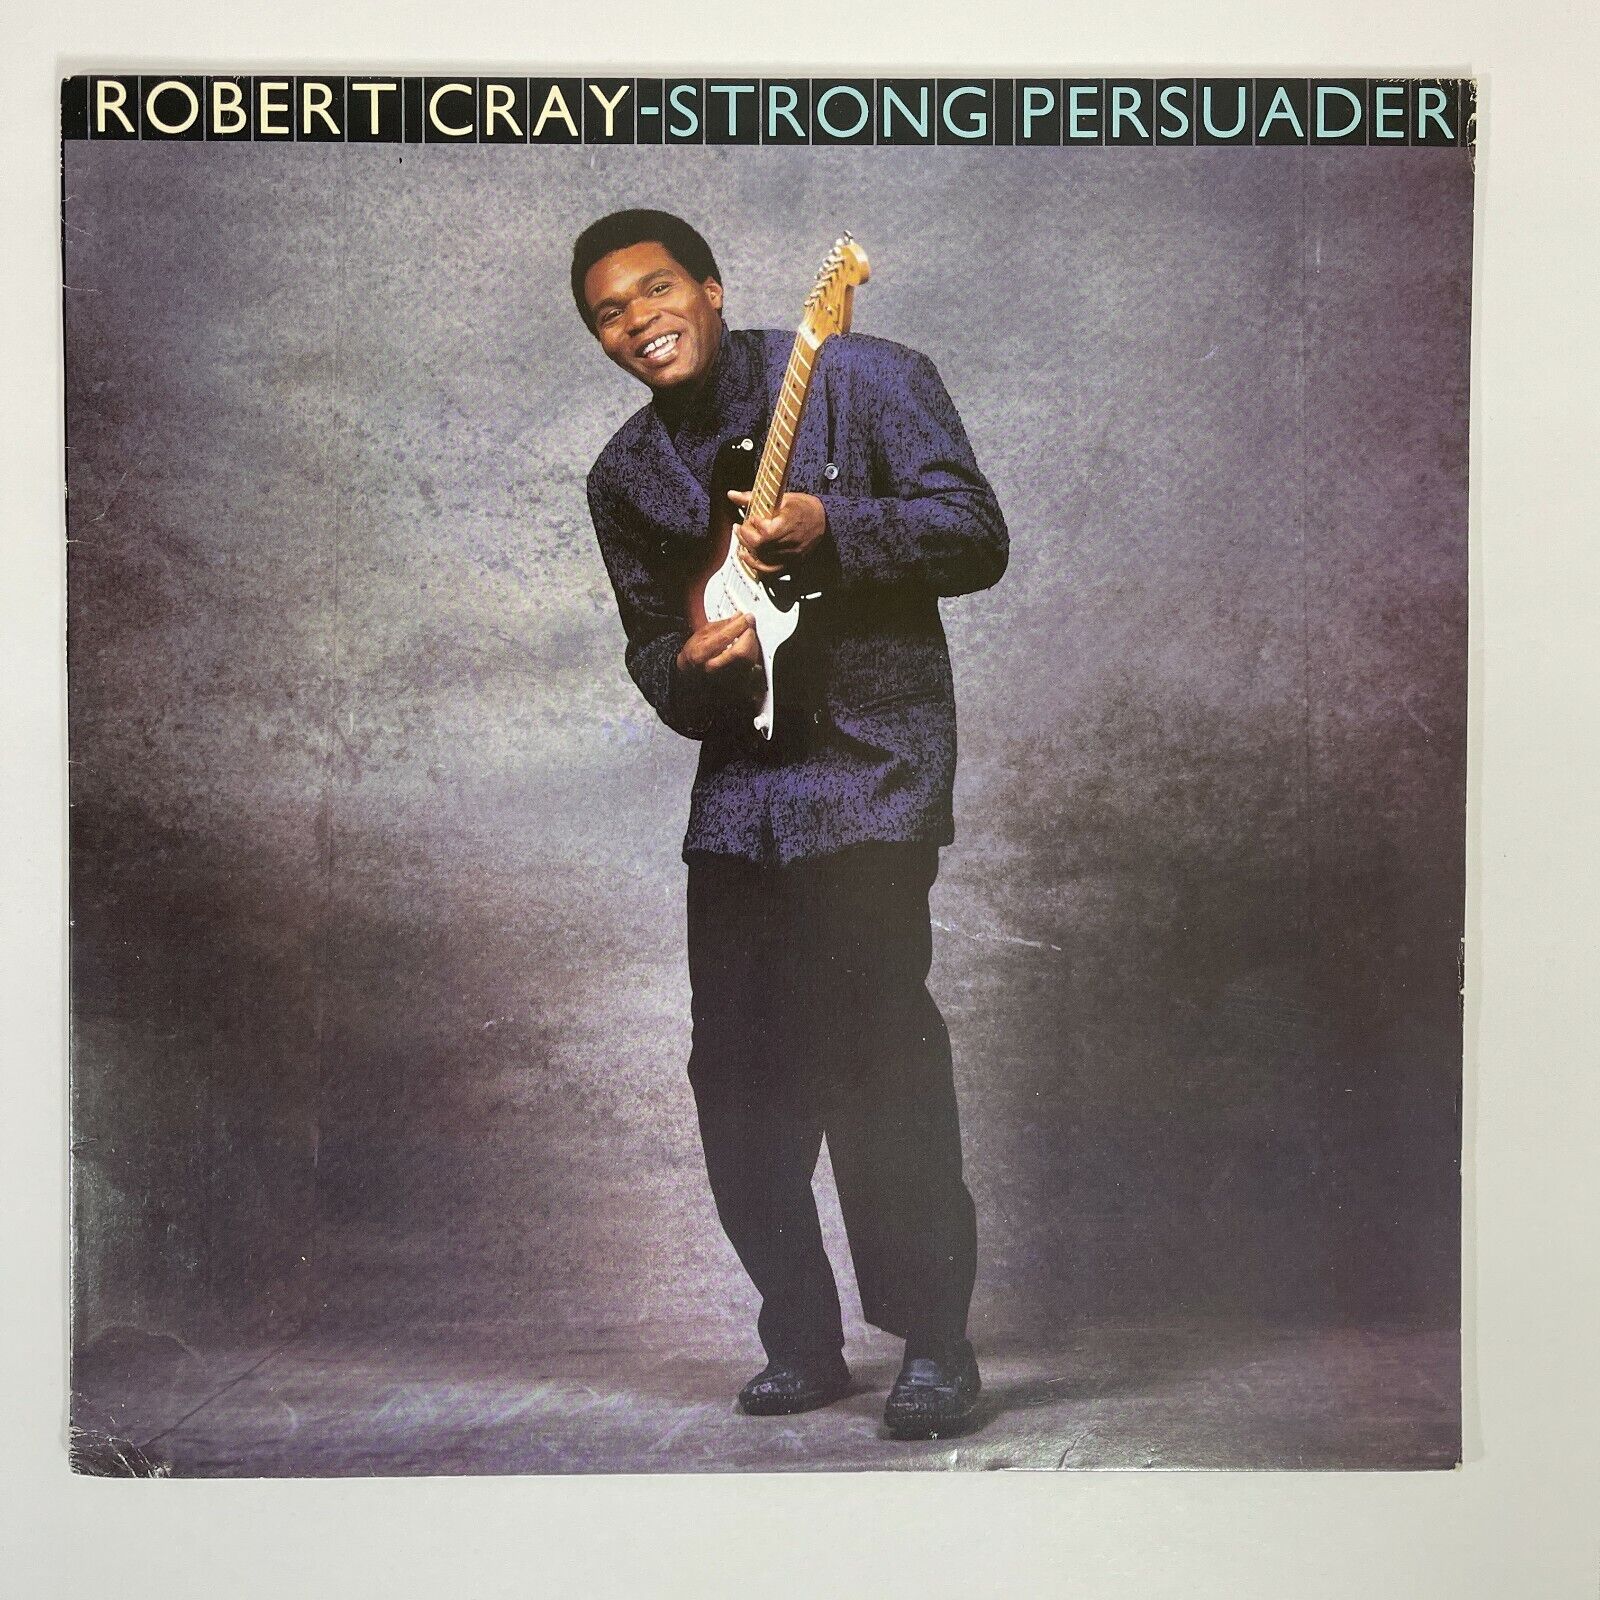 Robert Cray ‎– Strong Persuader Vinyl, LP 1986 Mercury ‎– 422 830-568-1 M-1 